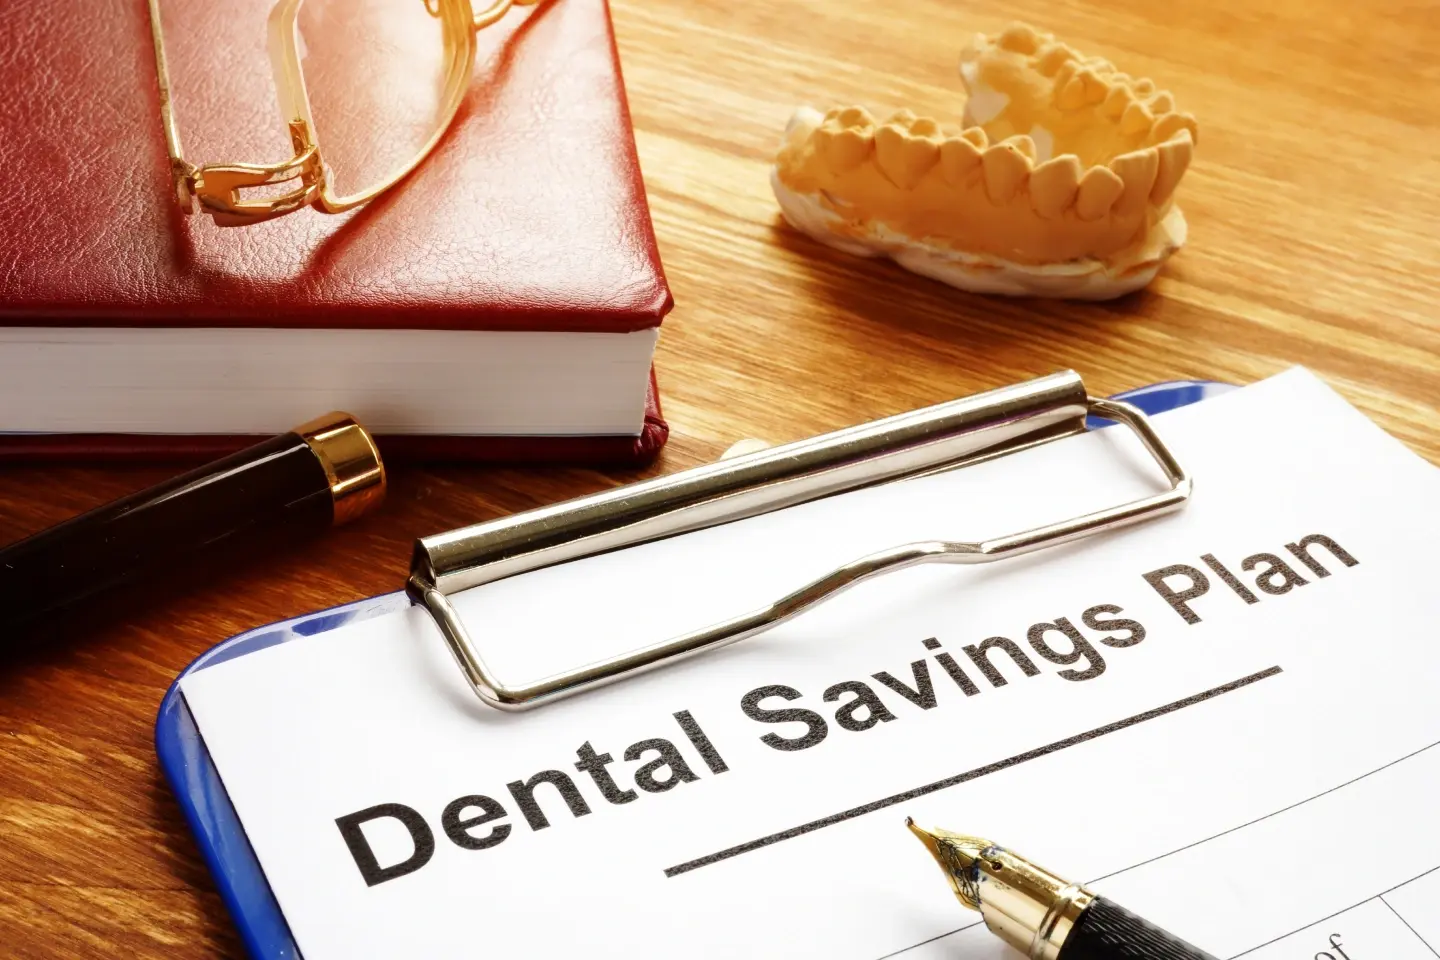 Dental Savings Plan for Patients at Ripon Dental, CA